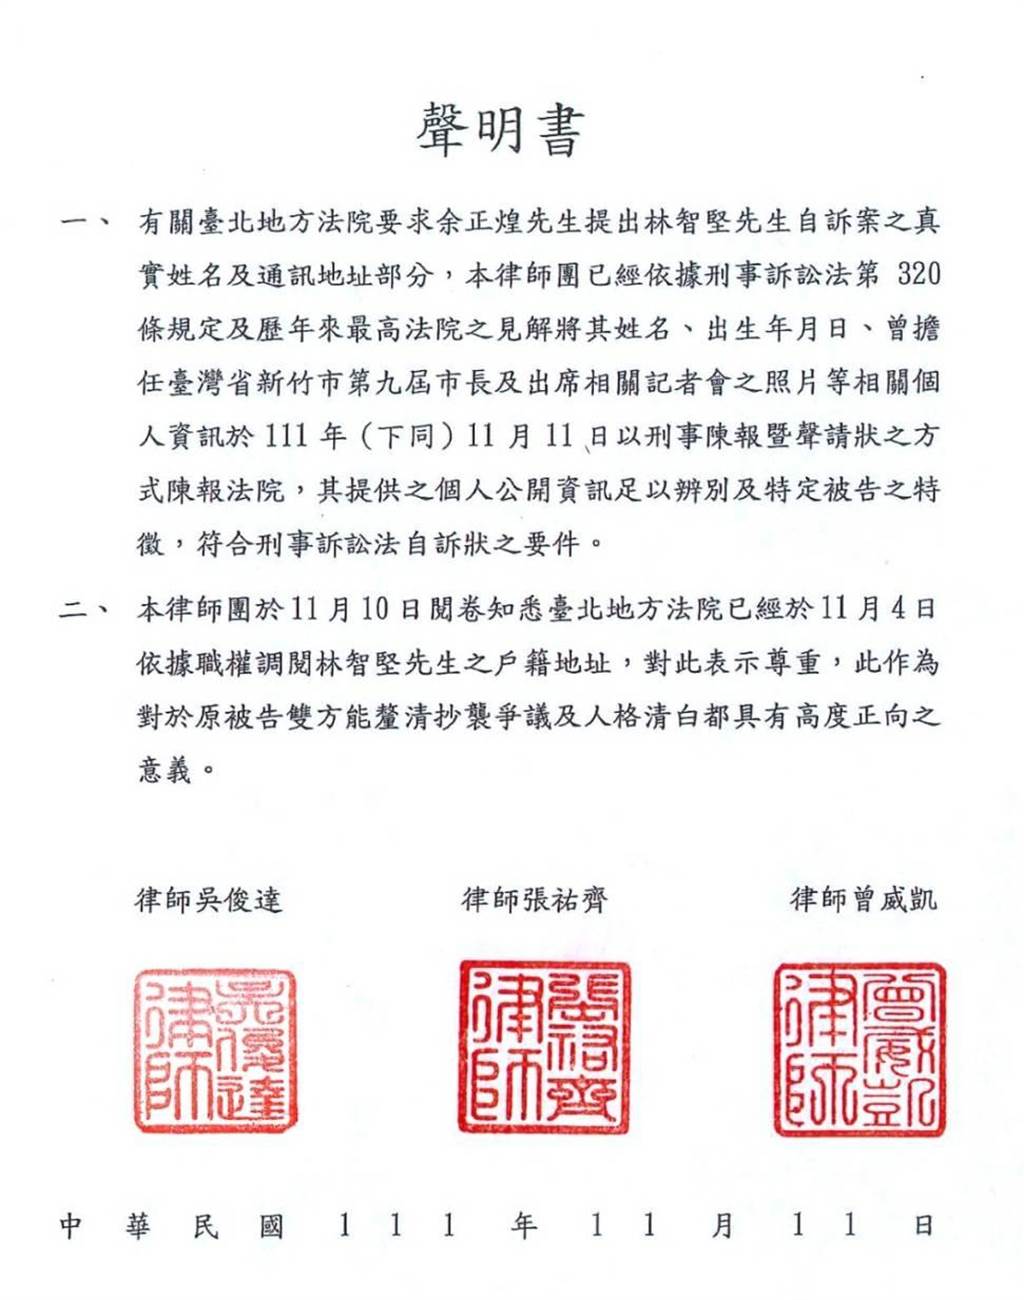 Re: [新聞] 林智堅論文抄襲不公開審理 法官要求提供